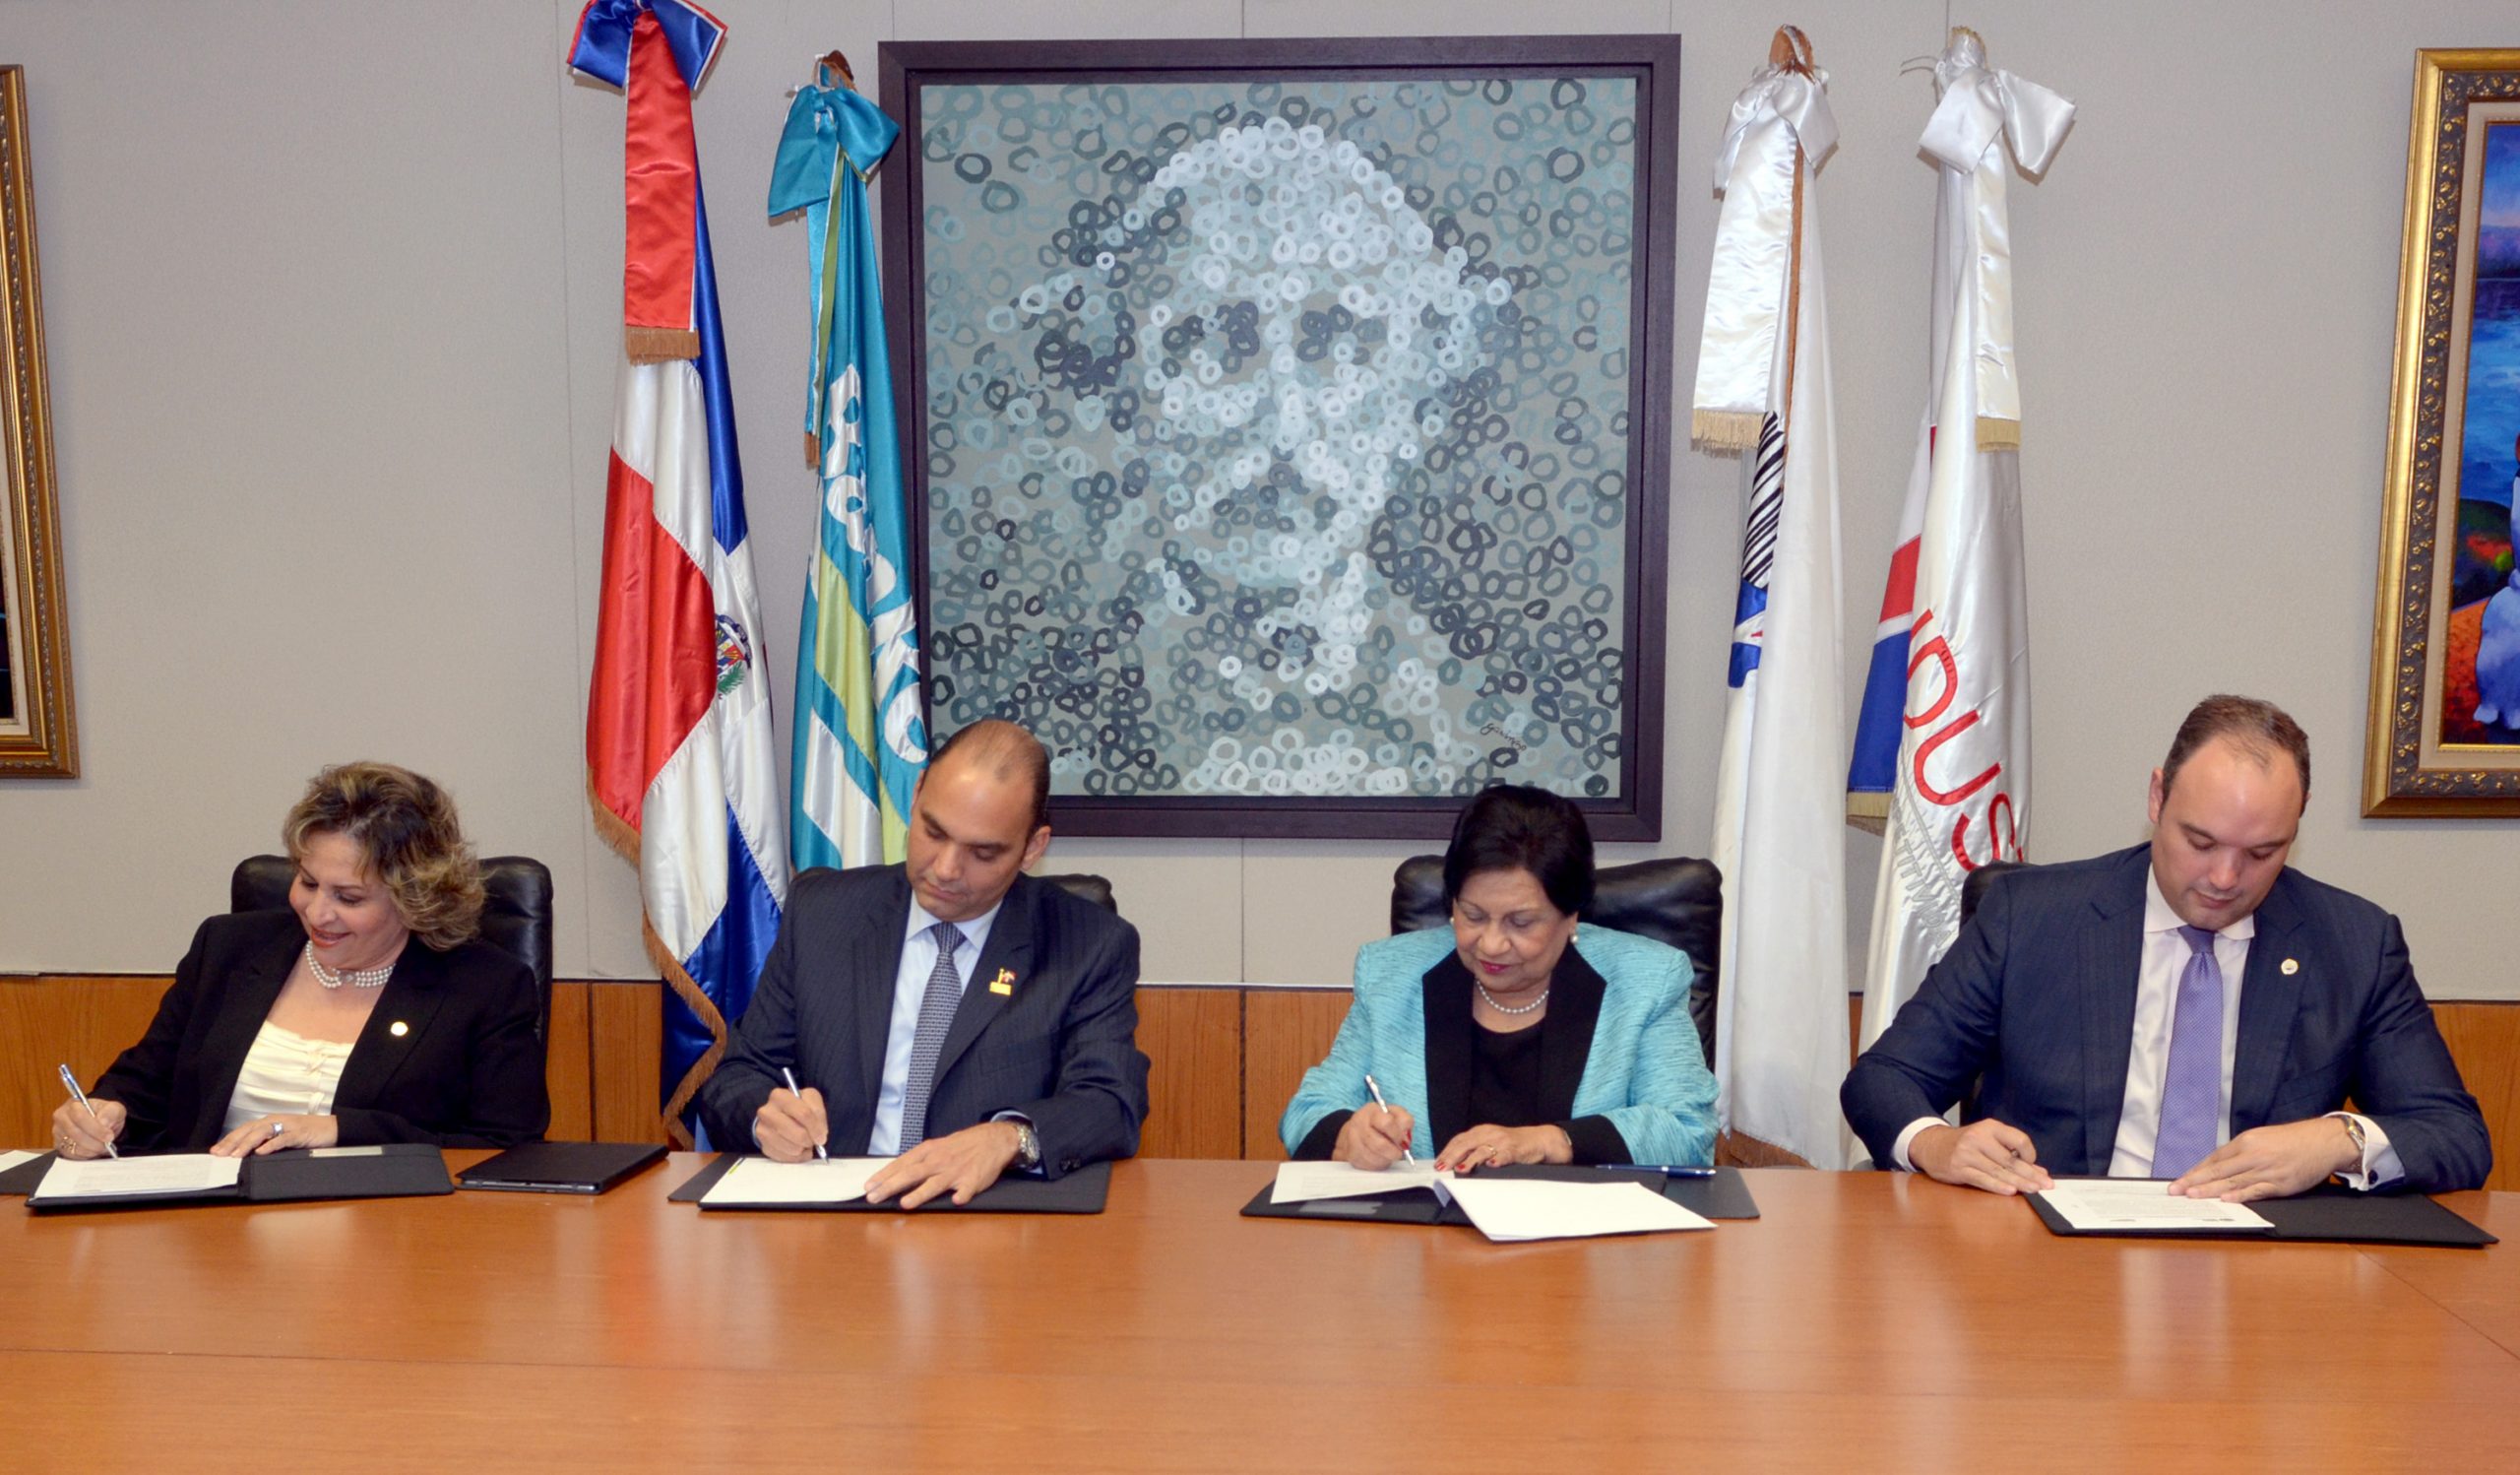 Alexandra Izquierdo, Enrique Ramírez Paniagua, Ligia Amada Melo y José del Castillo Saviñón, durante la firma del acuerdo.